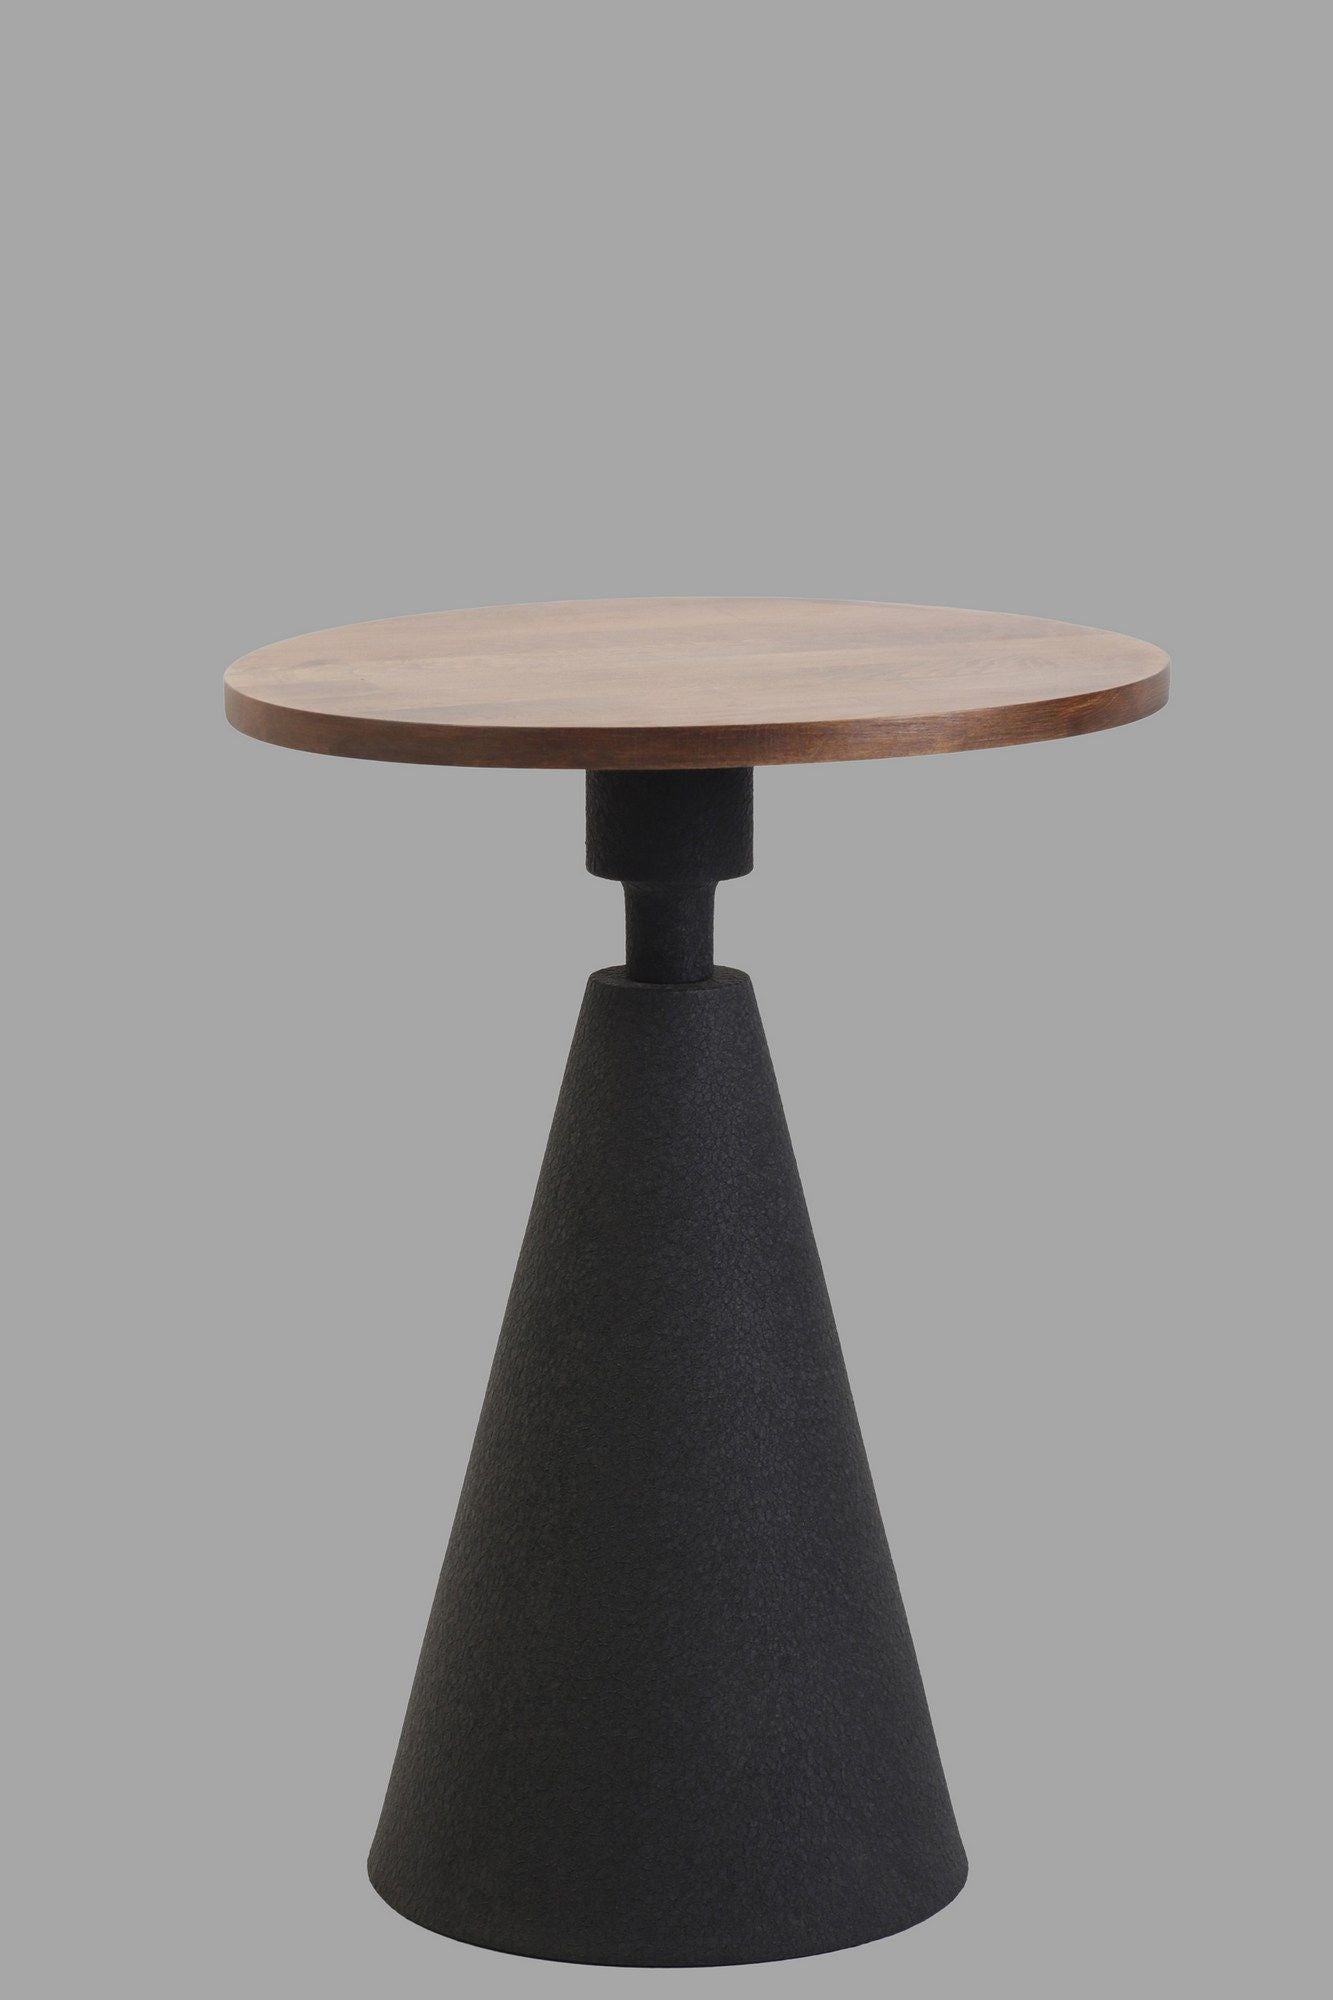 Kule - Black, Walnut - Side Table